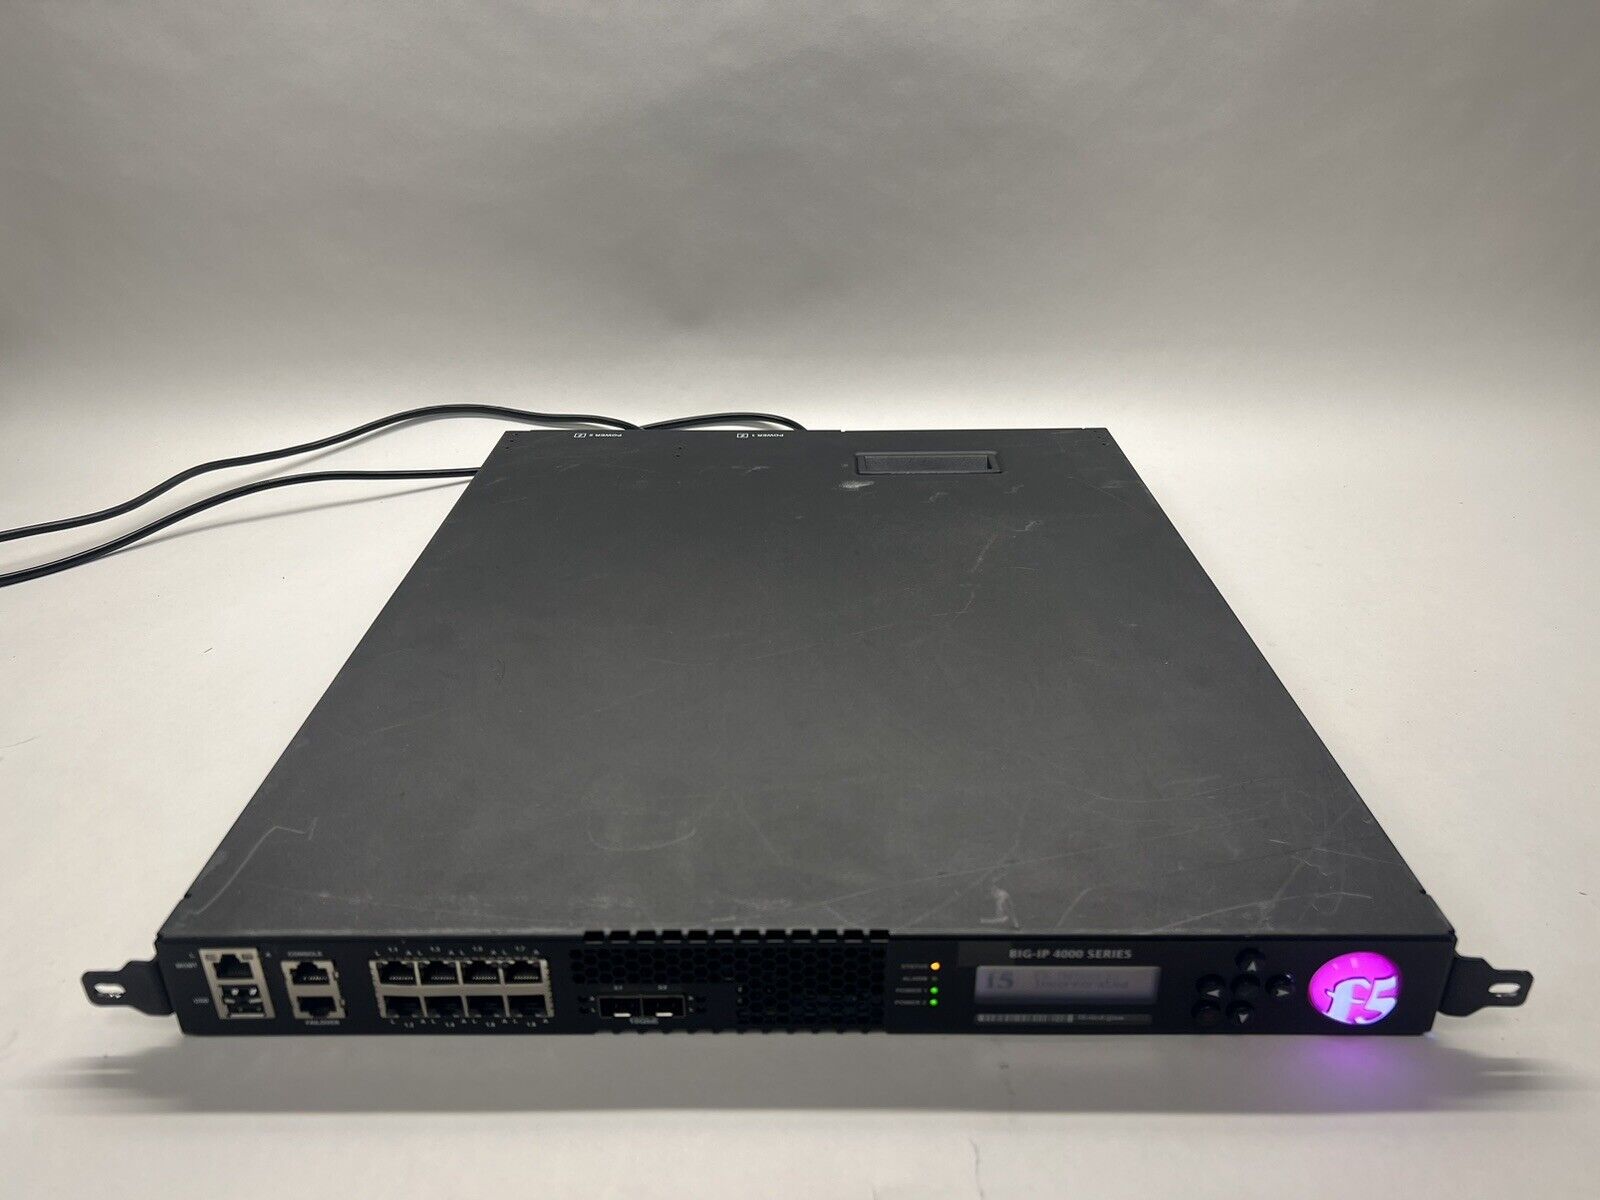 F5 Networks Big-IP 4000 Series QuadCore ASM LTM Routing License 2x 400W PSU